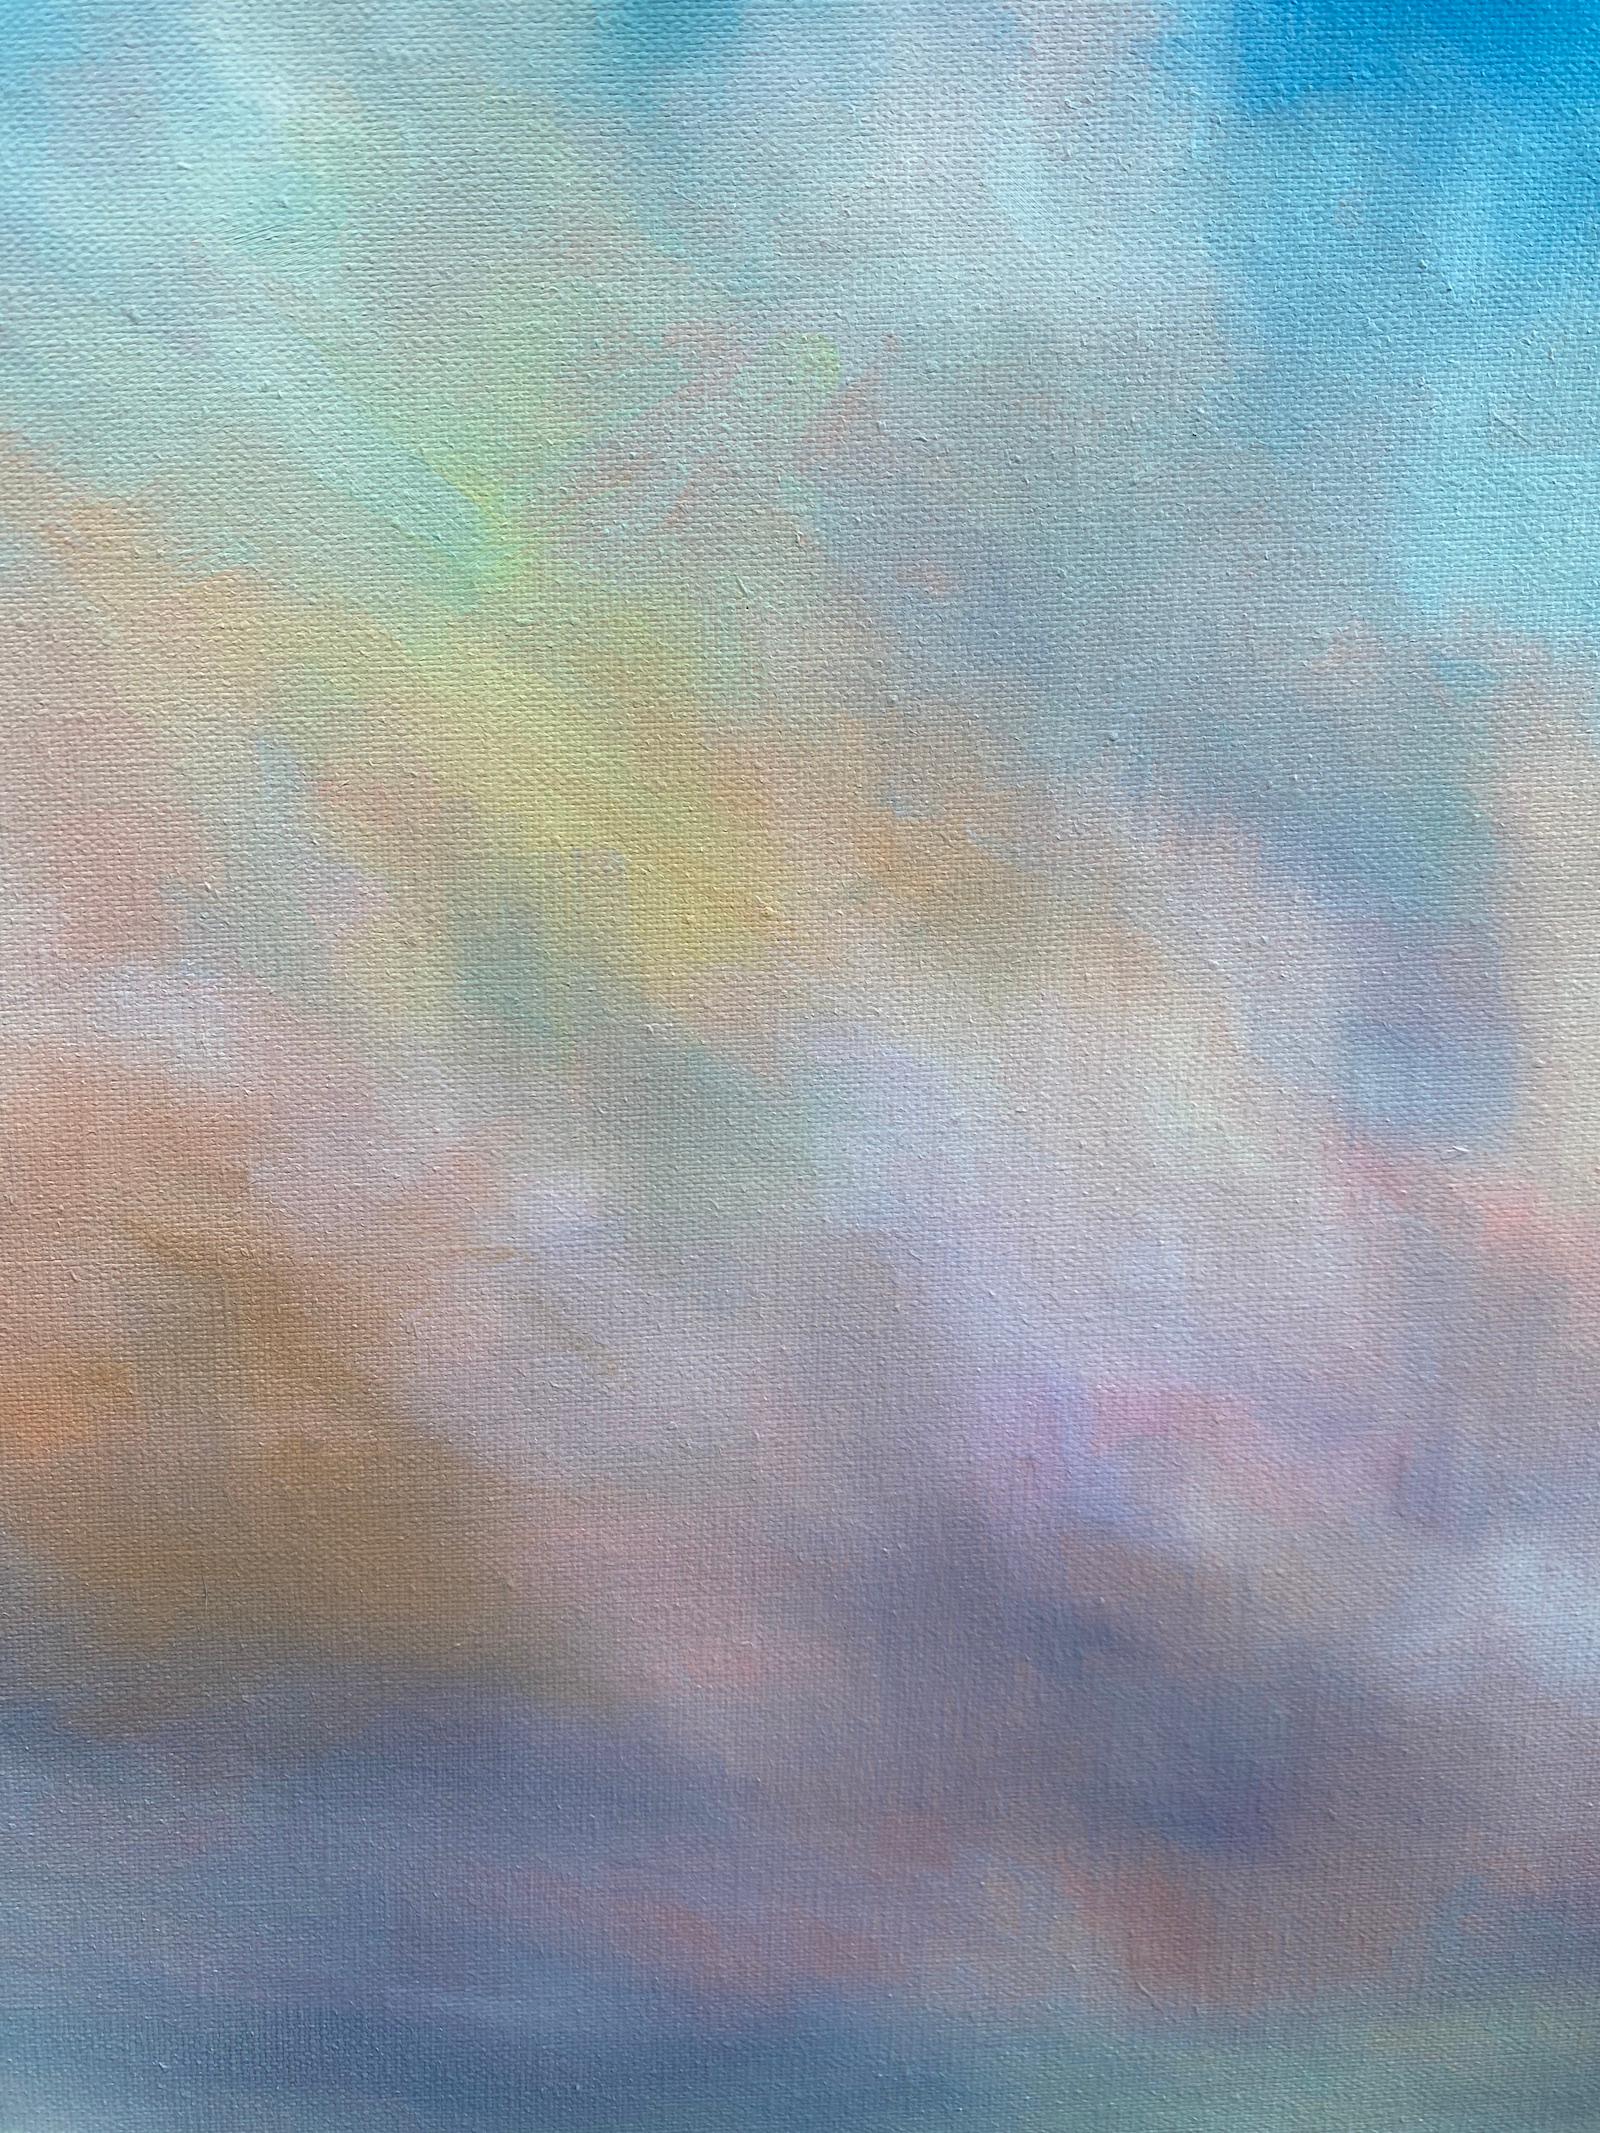 <p>Kommentare der Künstlerin<br />Die Künstlerin Nancy Hughes Miller präsentiert eine impressionistische Aussicht auf ruhige Feuchtgebiete. Der weite Blick auf den Himmel von der Küste aus ist für sie eine unerschöpfliche Quelle der Inspiration.